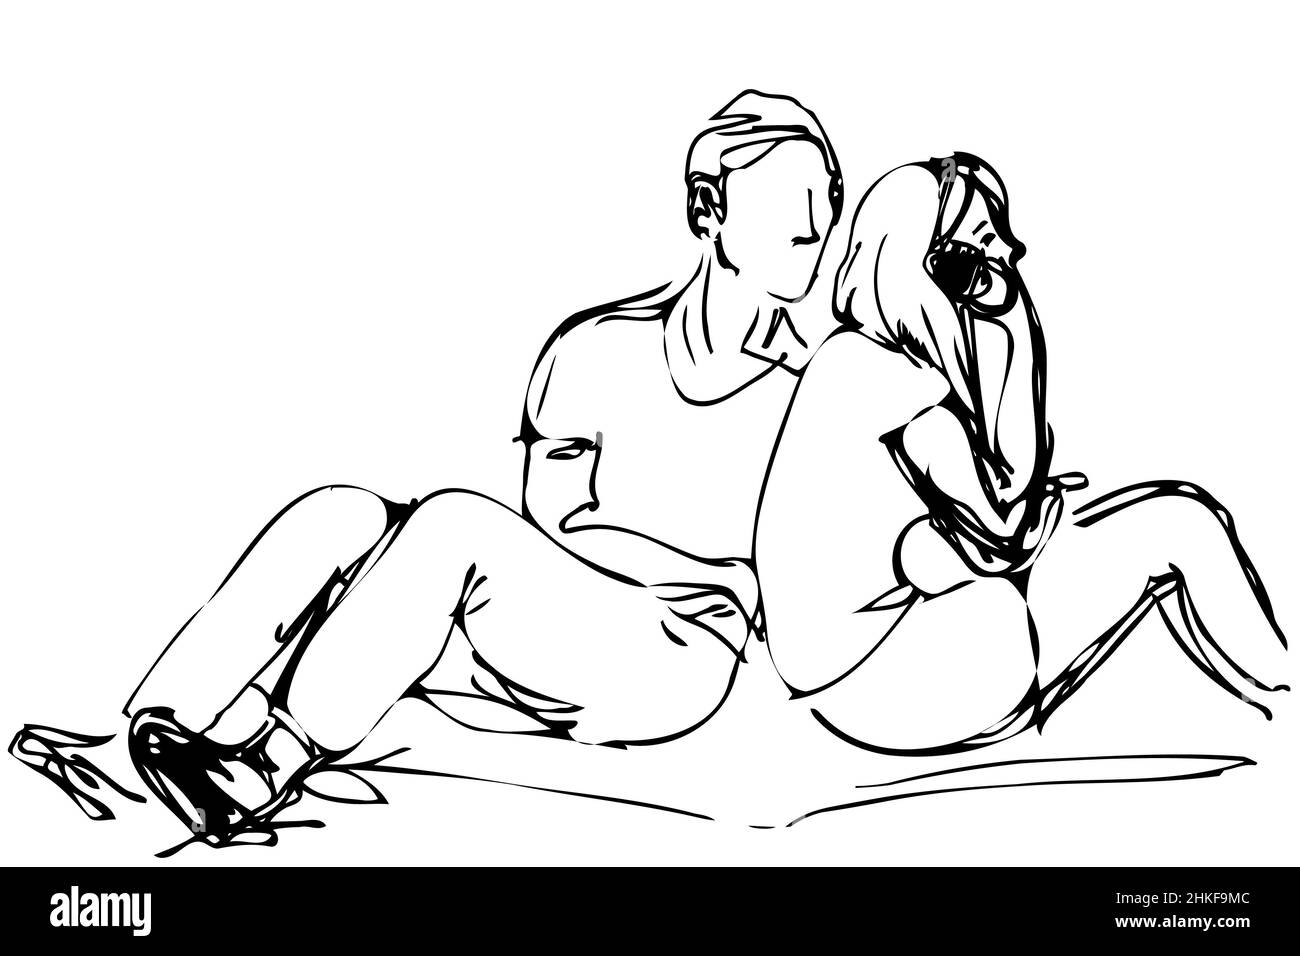 Dessin vectoriel noir et blanc d'un jeune homme et d'une jeune fille assis sur un tapis dans le parc Banque D'Images